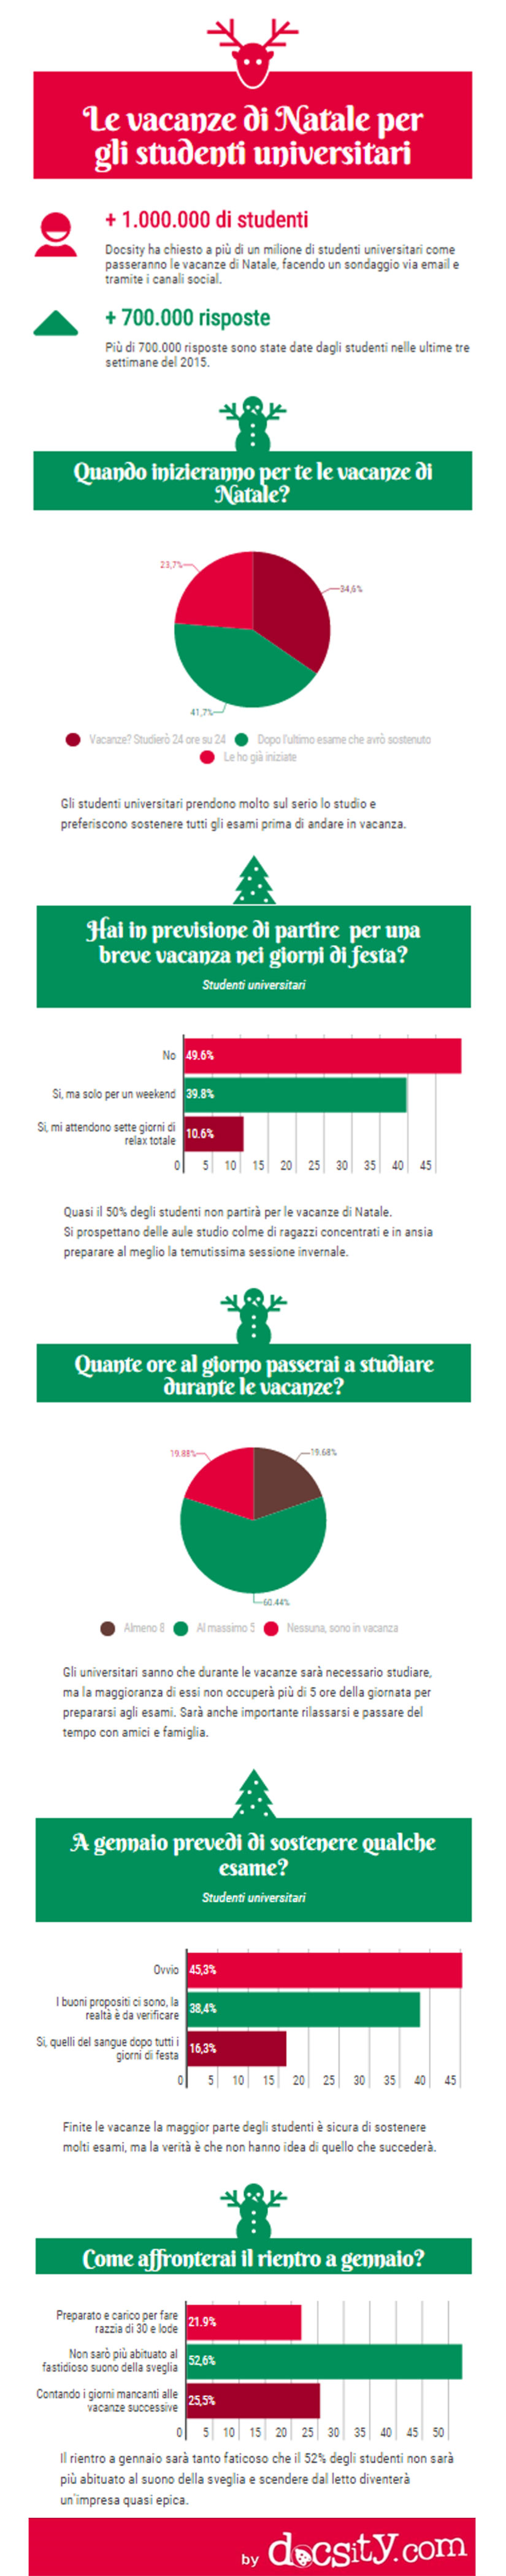 infografica-vacanze-natale-studenti-universitari